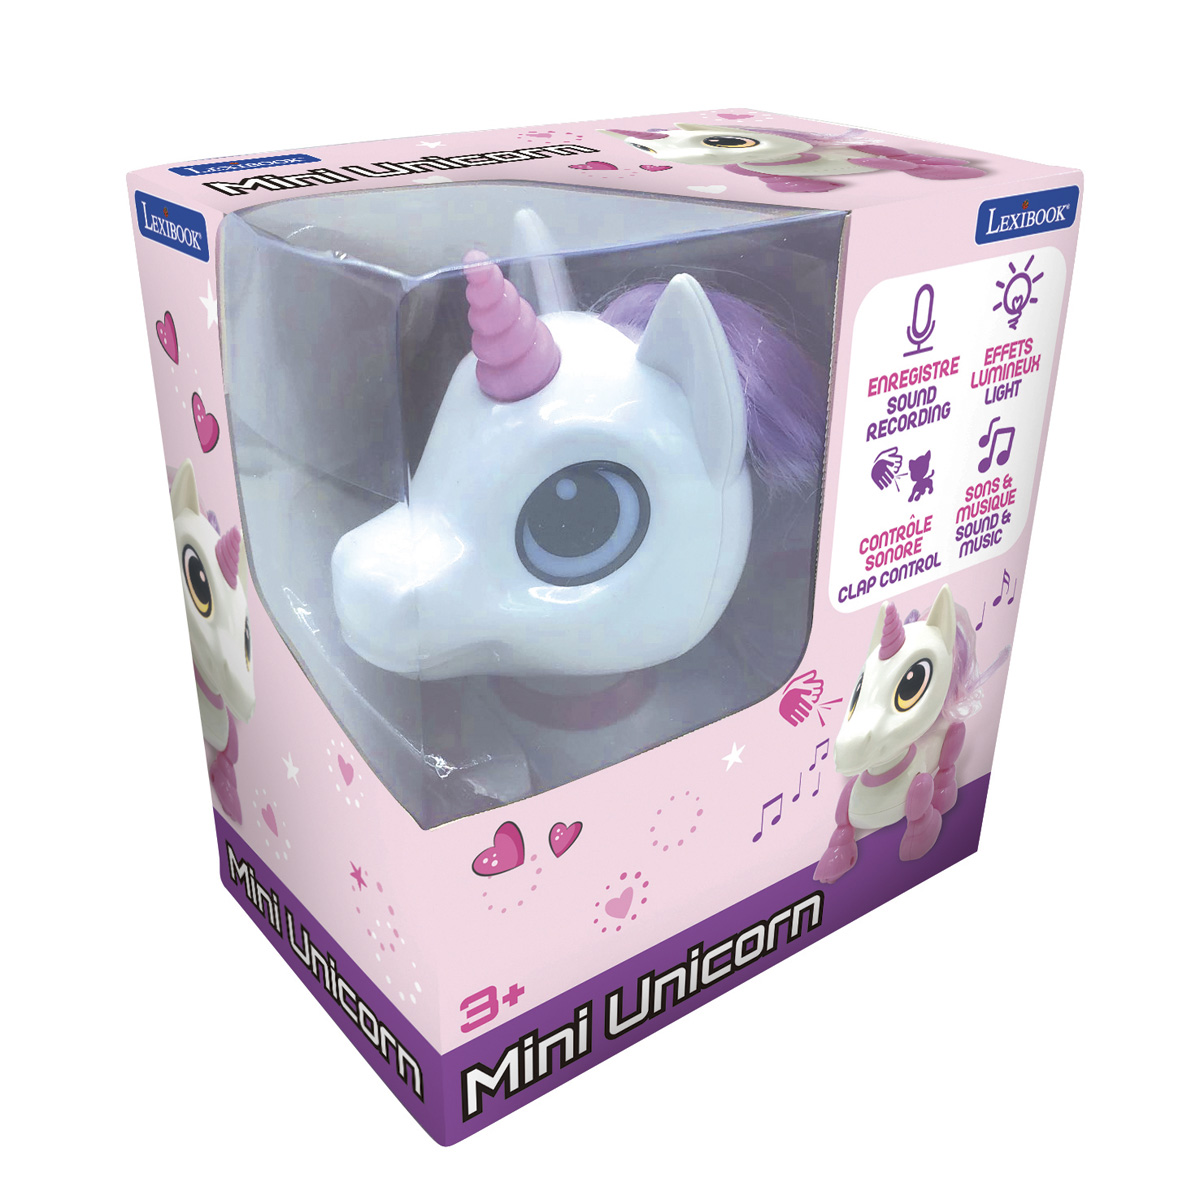 Rosa/Weiß RC Mini mit EINHORN Soundeffekten und POWER Tier, LEXIBOOK Einhornroboter Licht